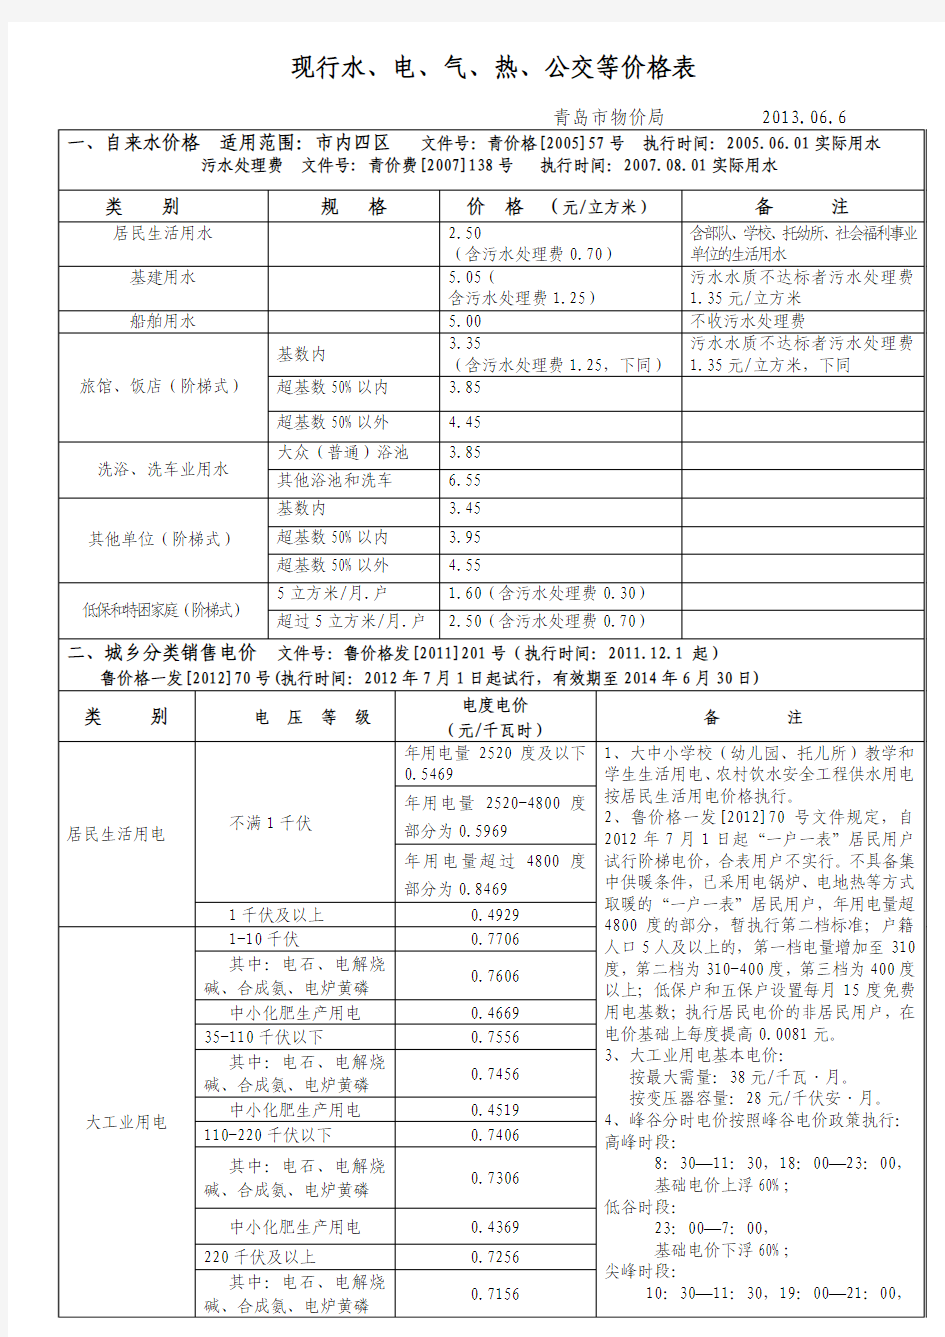 青岛市现行水、电、气、热、公交等价格表(青岛市物价局2013.6.6发布)